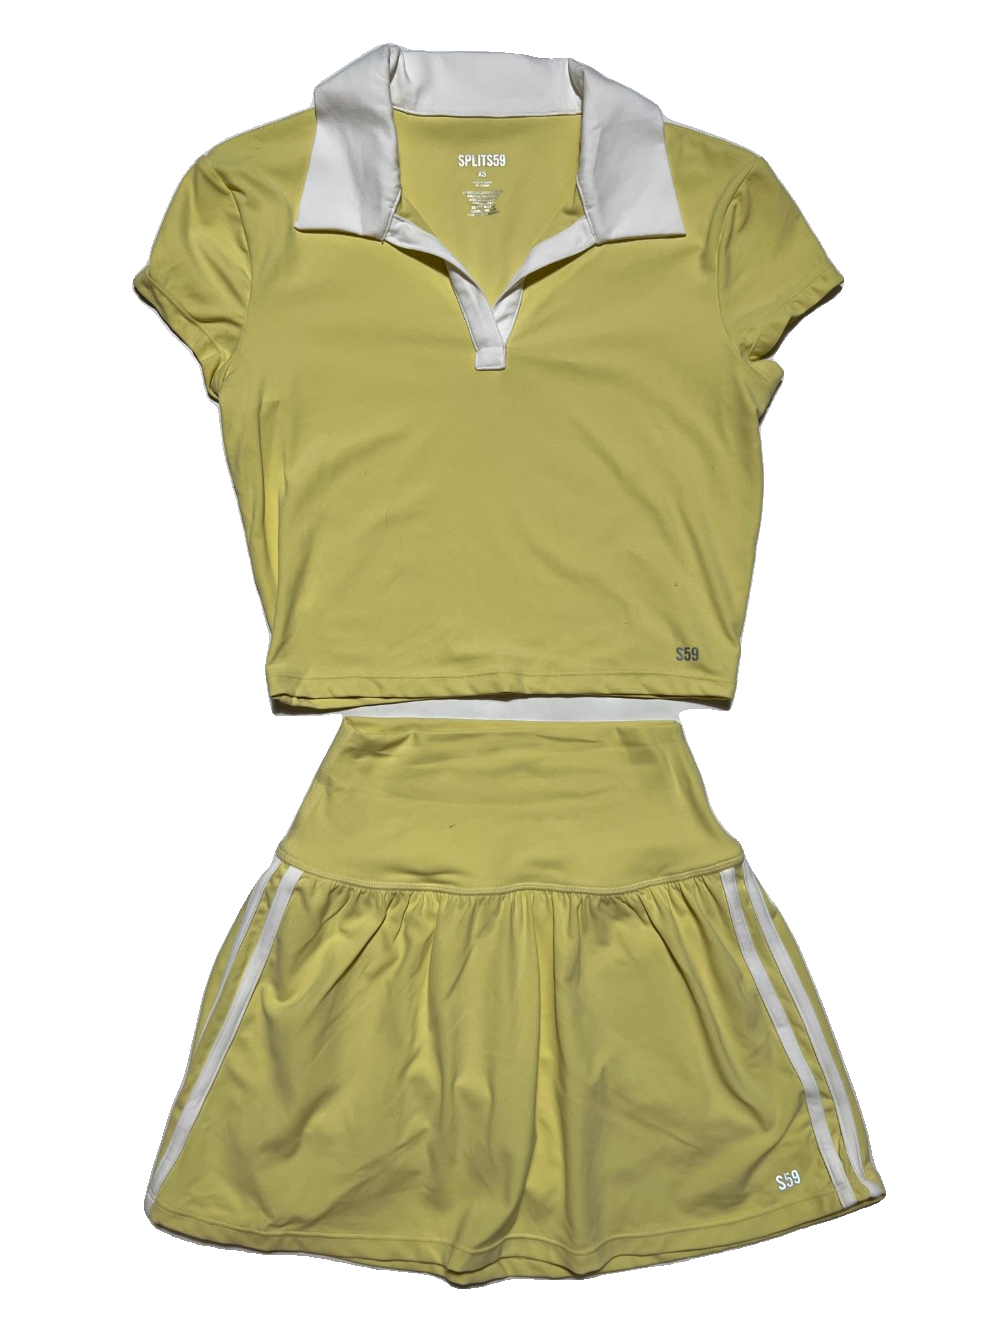 Splits 59- Yellow "Airweight" Tennis Skirt Set